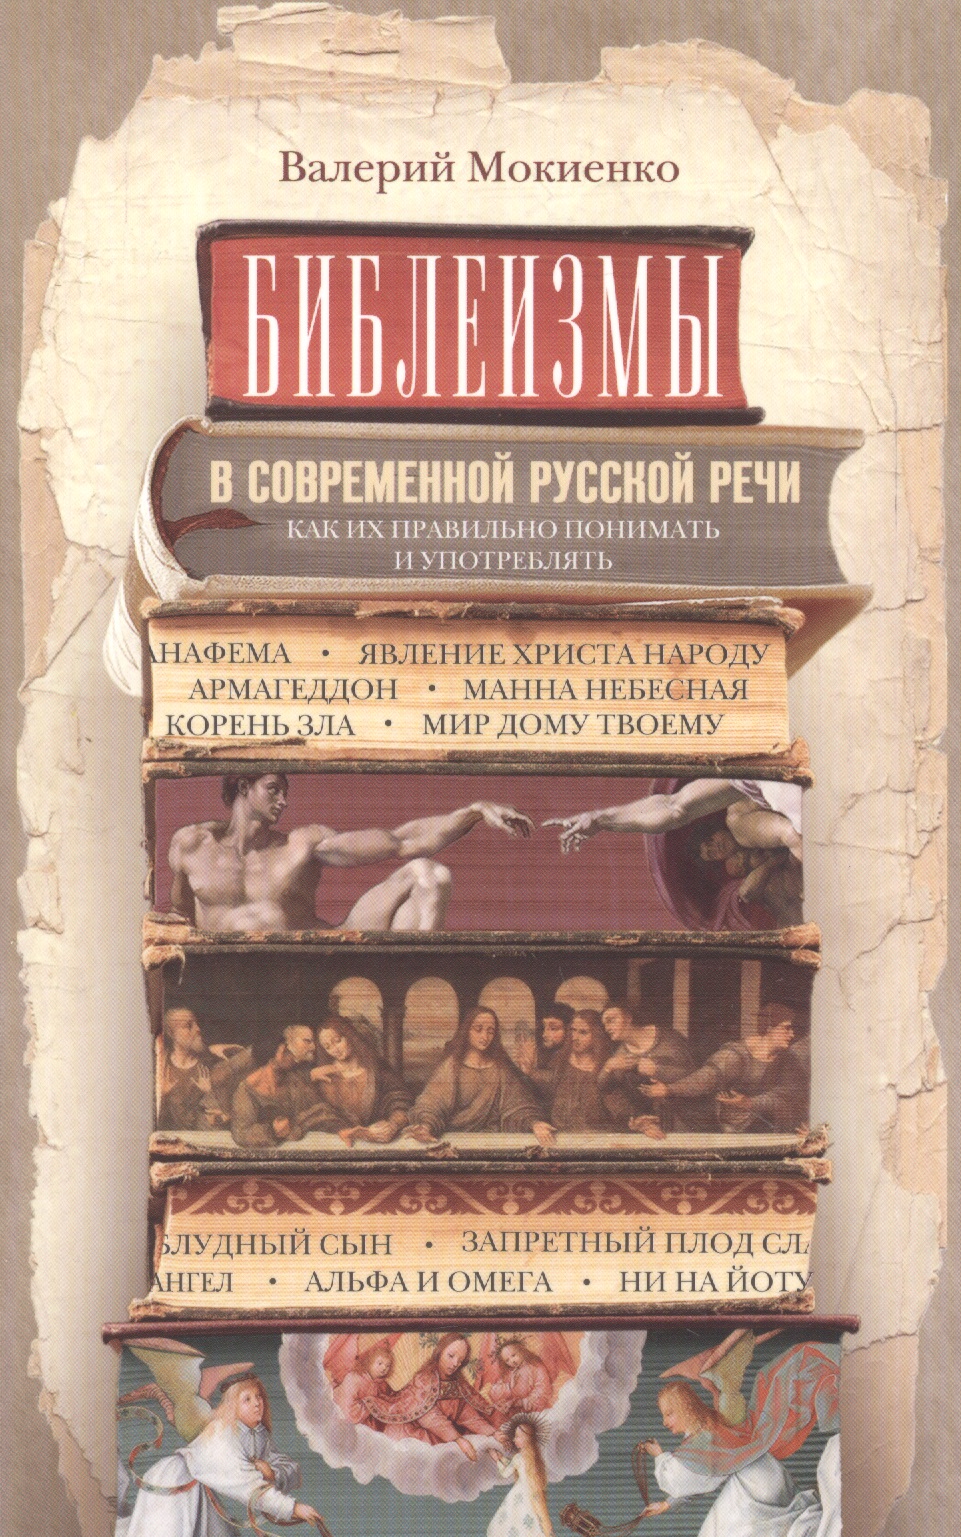 Мокиенко Валерий Михайлович - Библеизмы в современной русской речи. Как их правильно понимать и употреблять